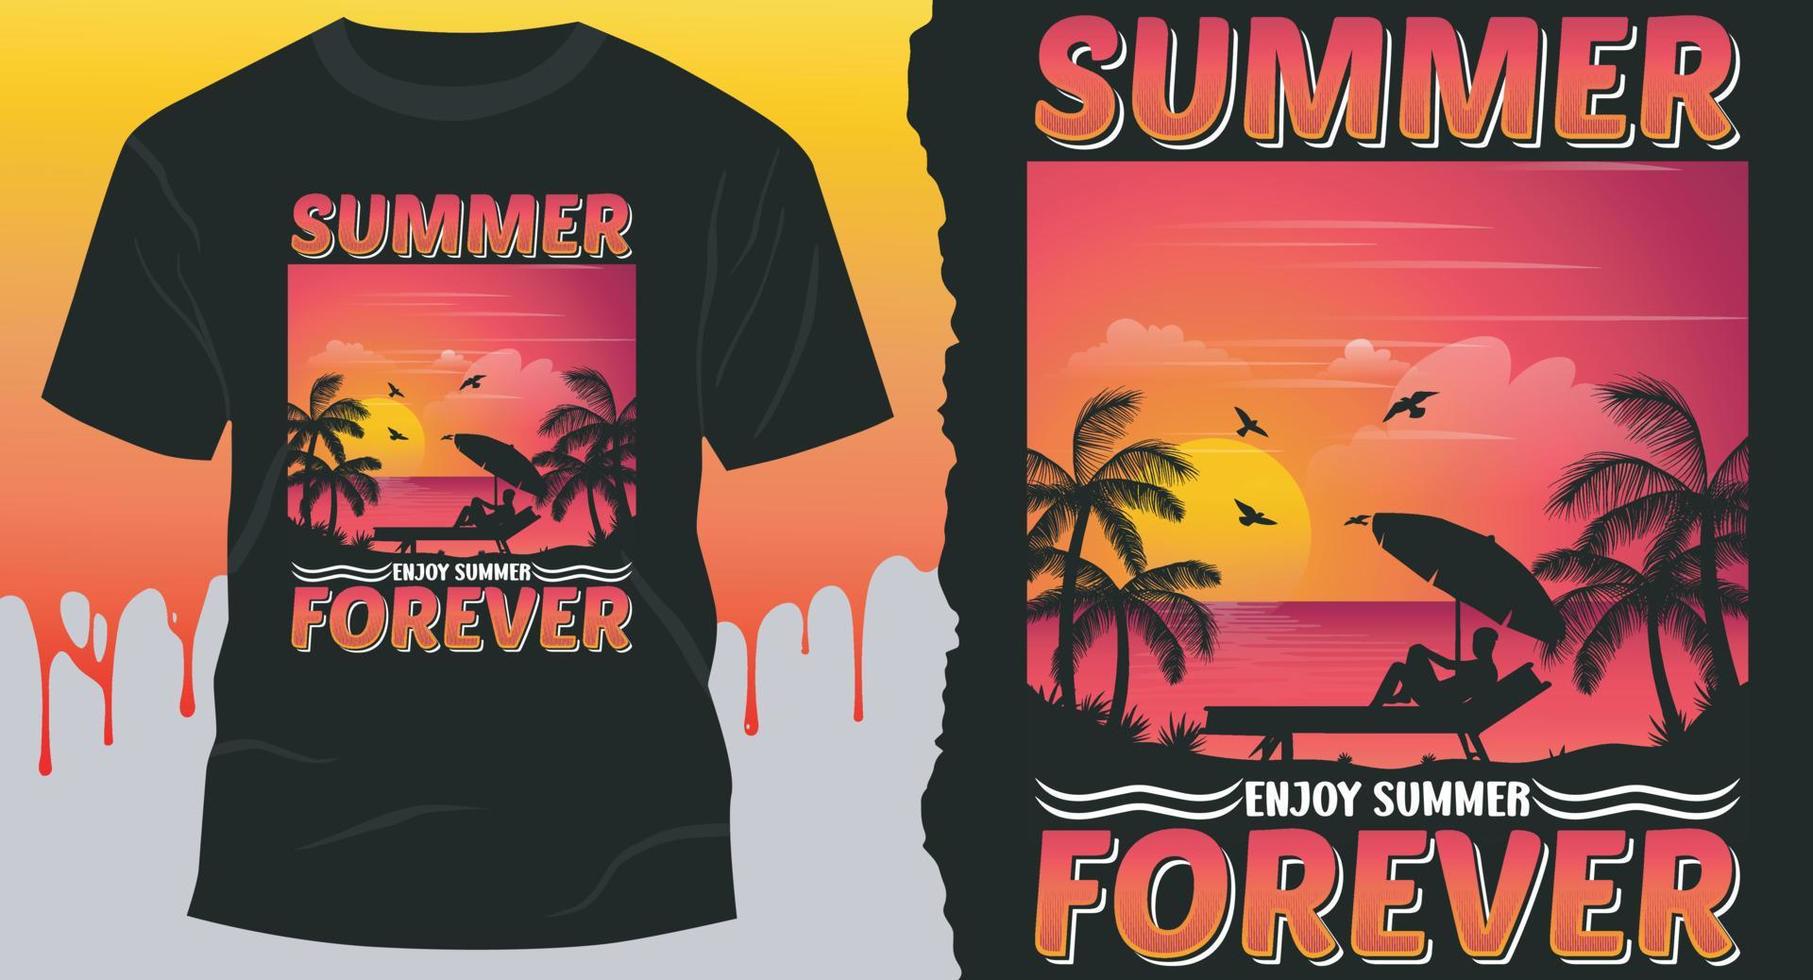 verano disfruta del verano para siempre. mejor diseño de verano para tarjetas de regalo, pancartas, vectores, camisetas, carteles, impresos, etc. vector